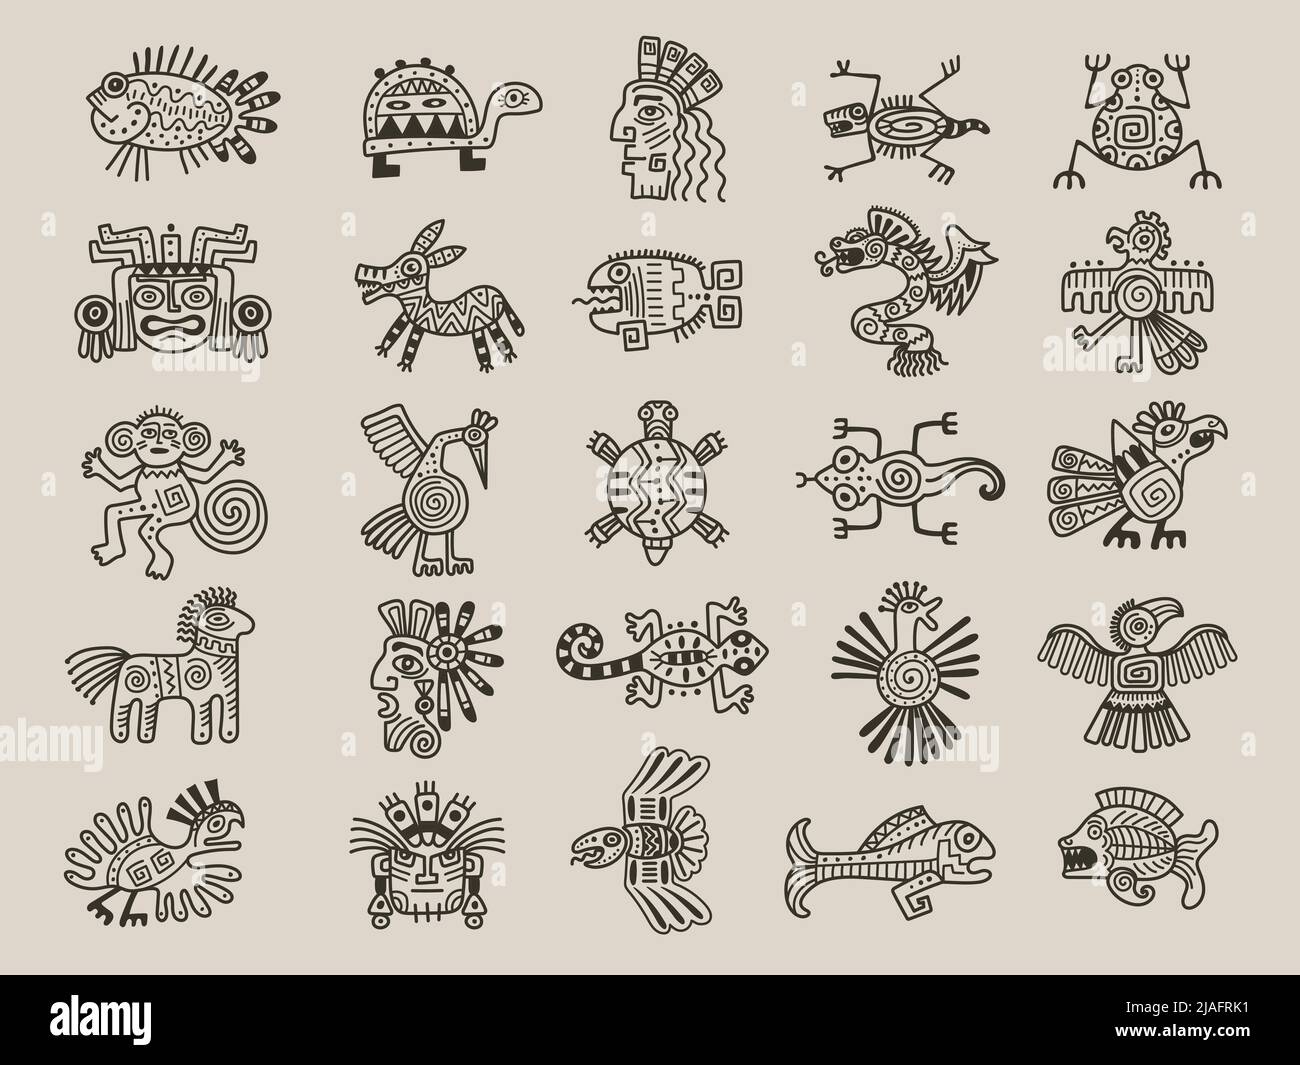 Animaux aztèques. Symboles tribals mexicains objets graphiques maya dessins d'origine ethnique vecteur récent ensemble de civilisation aztèque Illustration de Vecteur